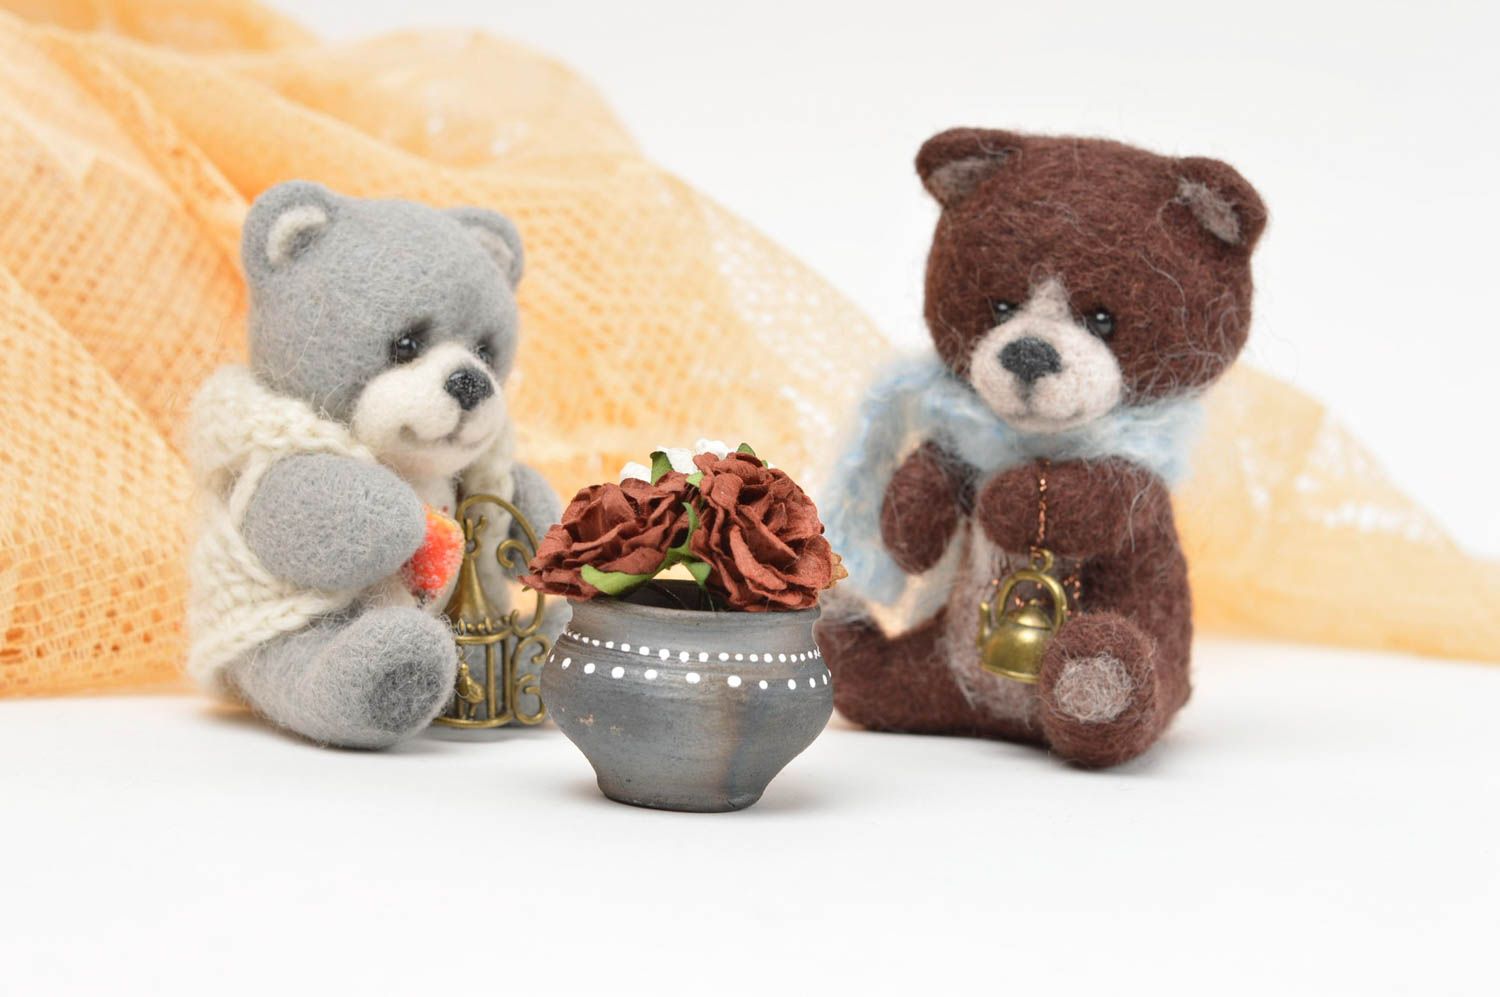 Spielzeug Set Handmade Stoff Tiere Geschenk Idee Kuschel Tiere Bären 2 Stück foto 1